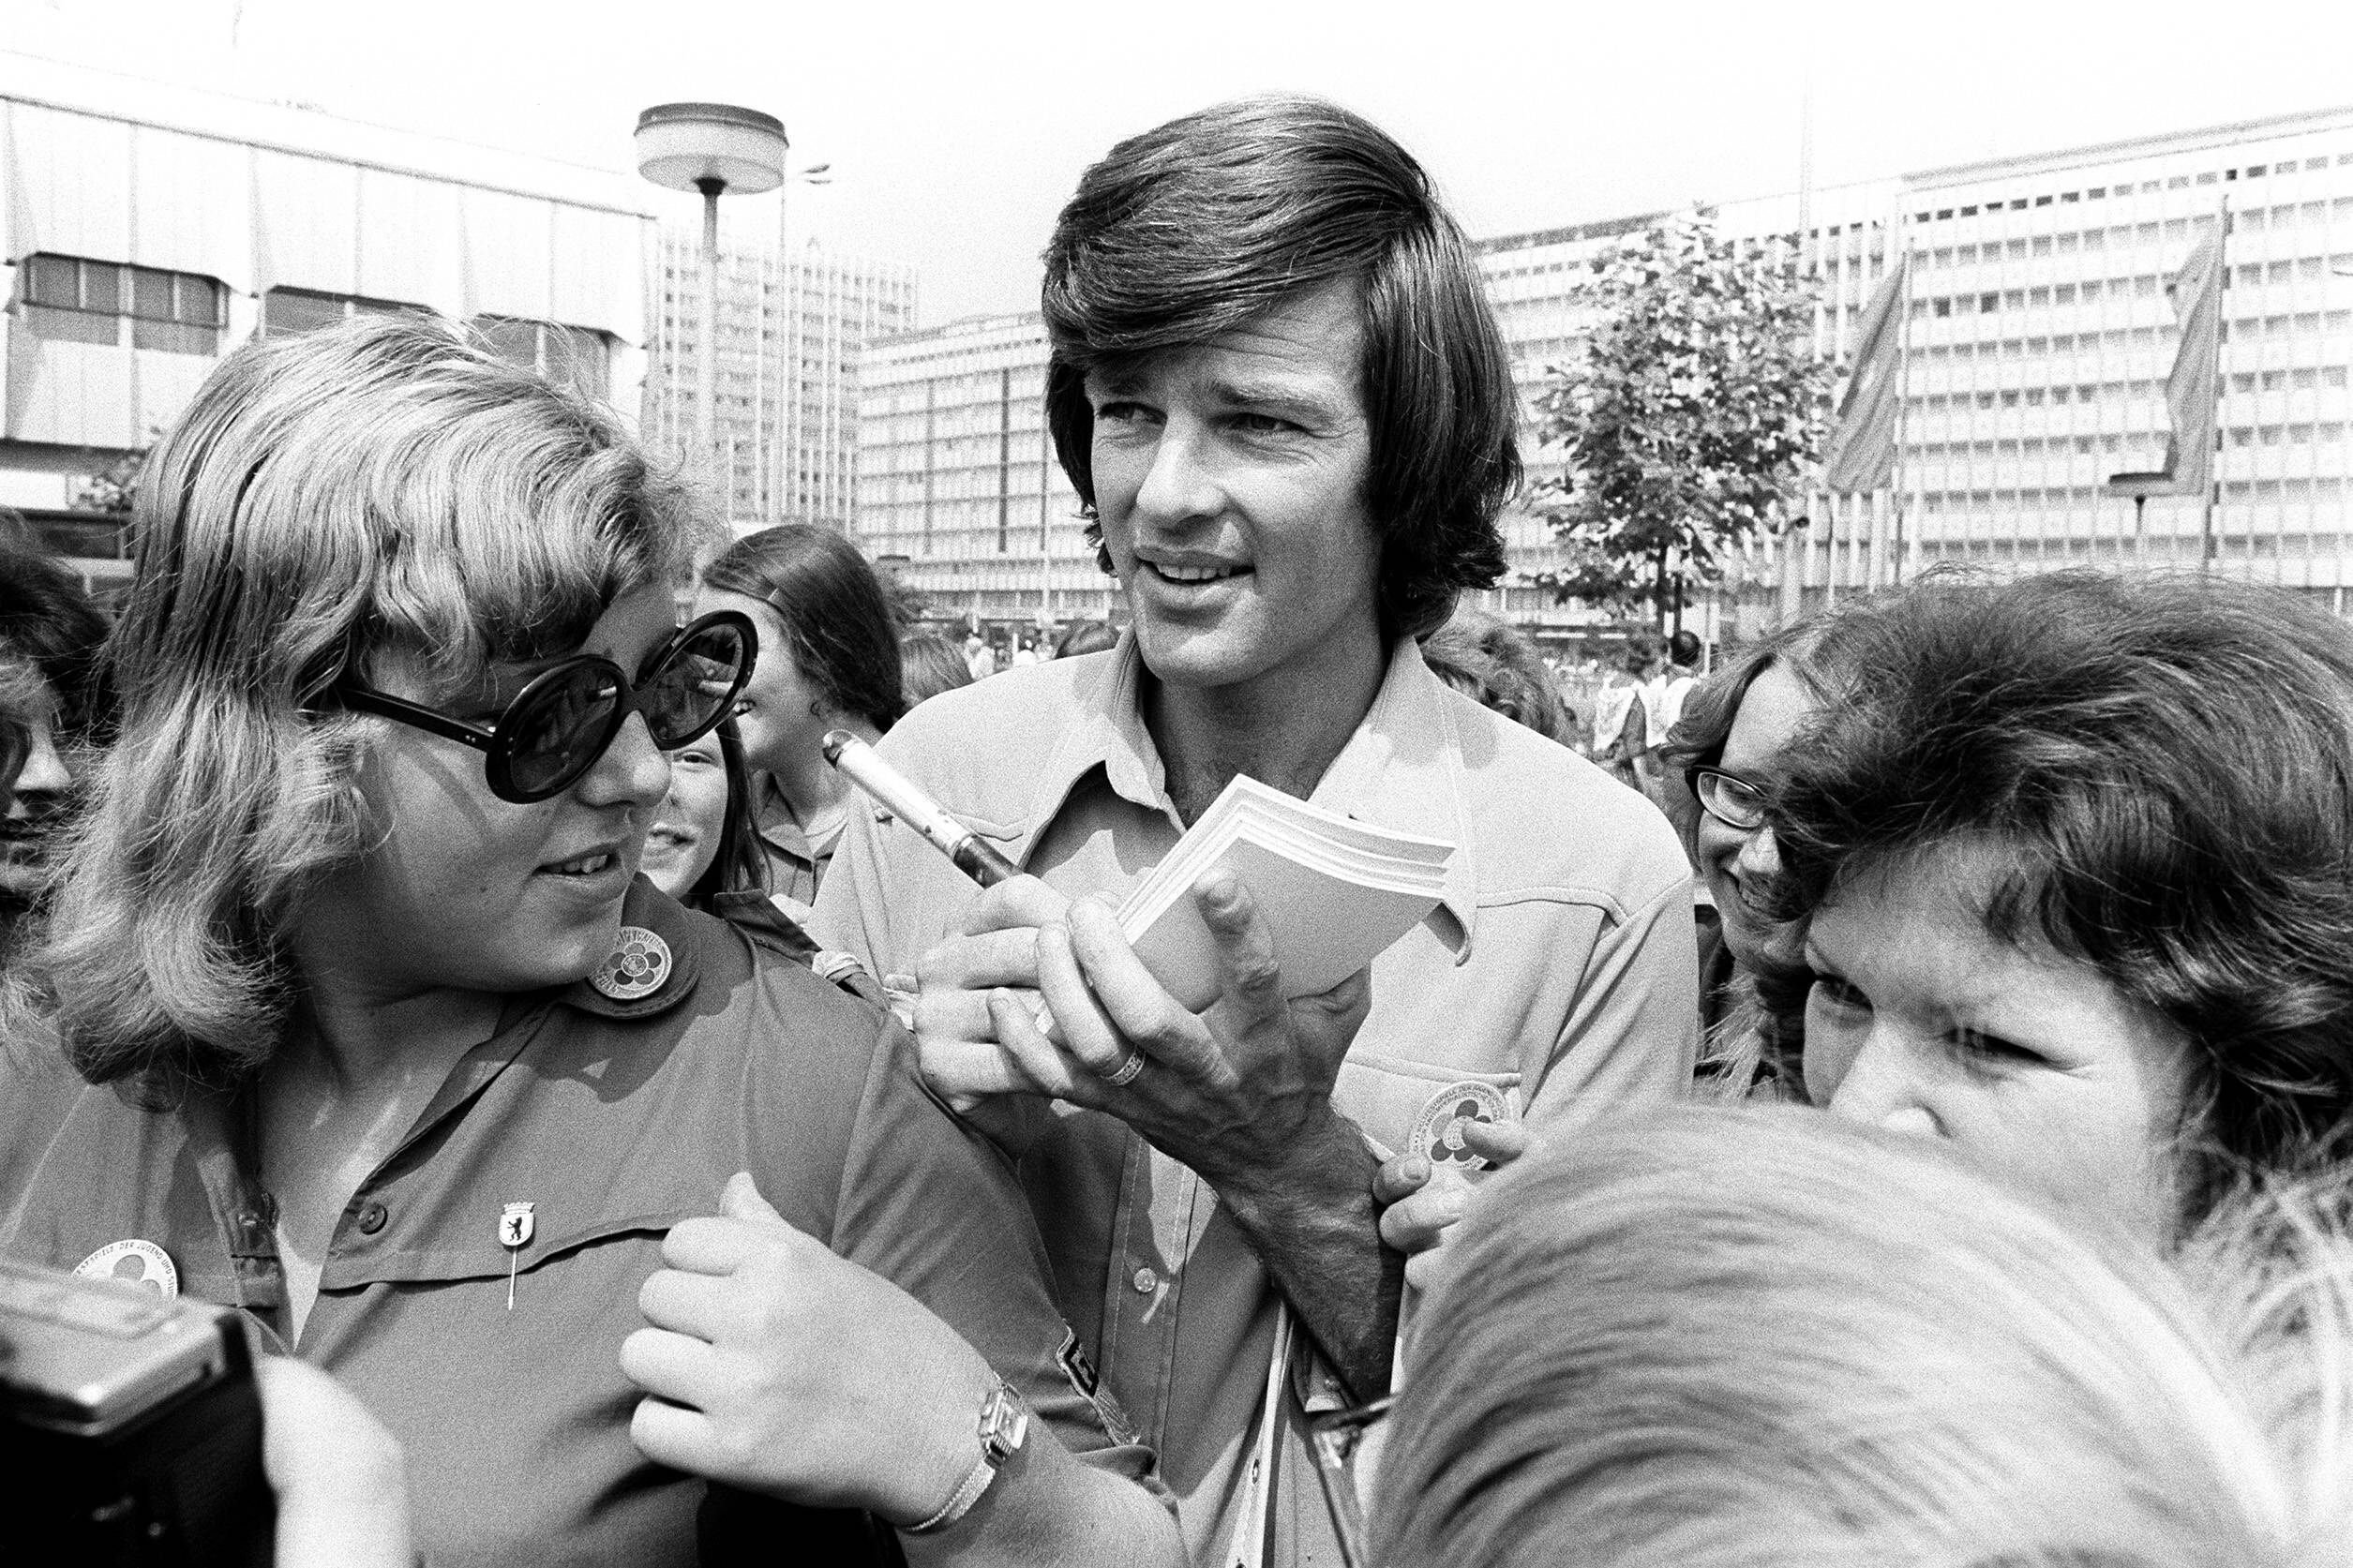 Ein Amerikaner in Ost-Berlin: Dean Reed gibt 1973 Autogramme bei den Weltfestspielen der Jugend in Ost-Berlin. Foto: Imago/Sven Simon